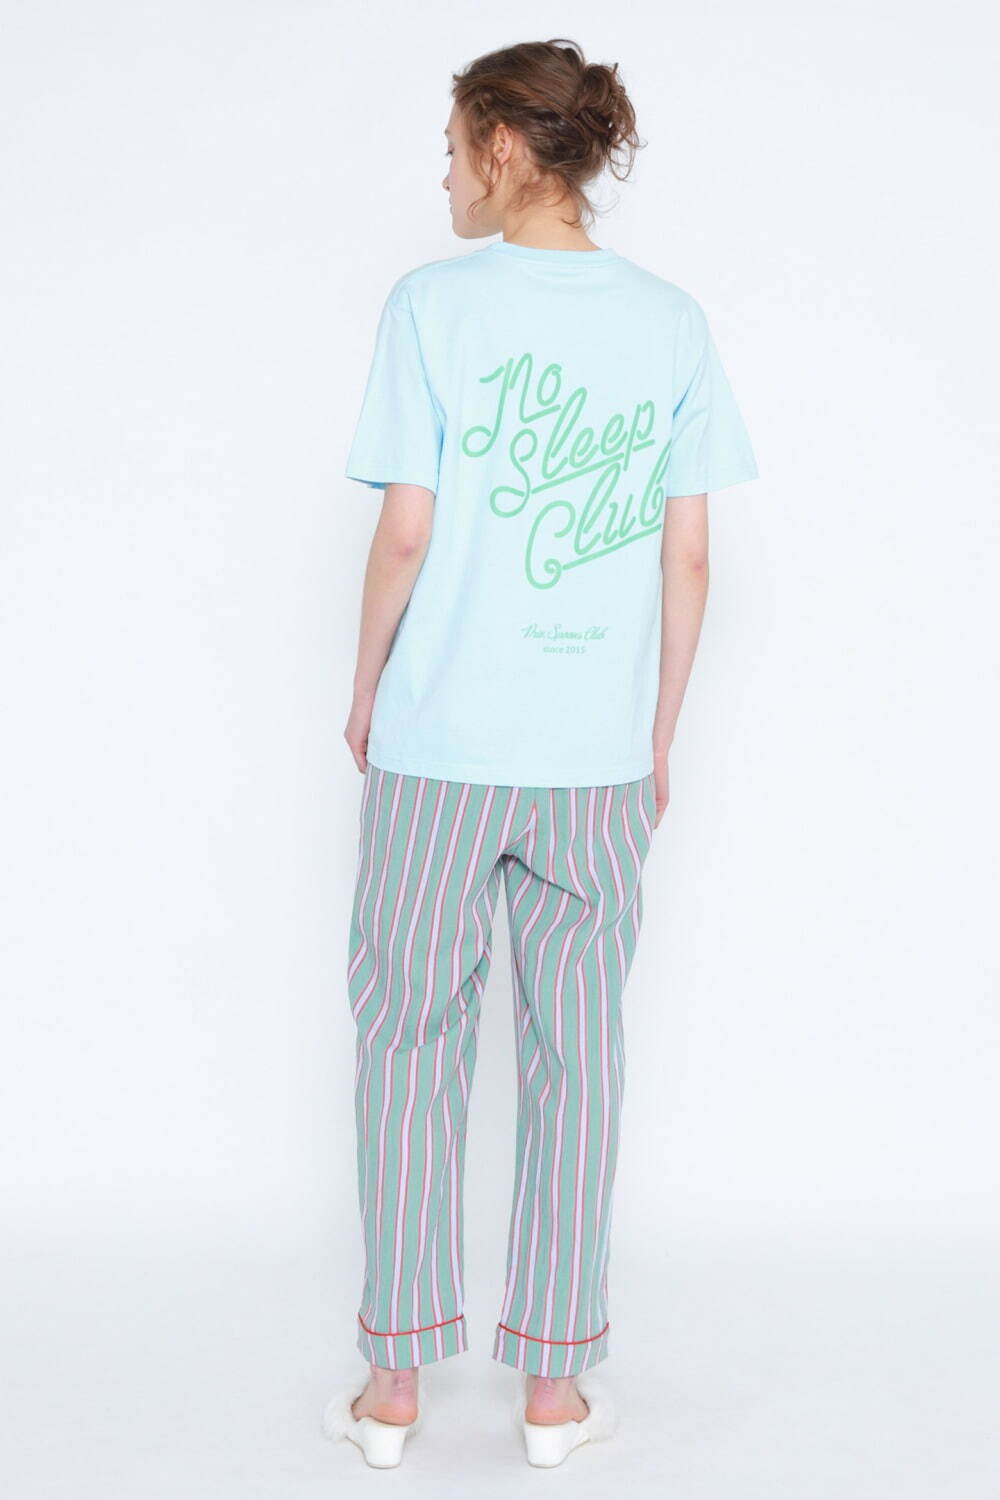 NO SLEEP CLUB Tシャツ 6,380円(税込)